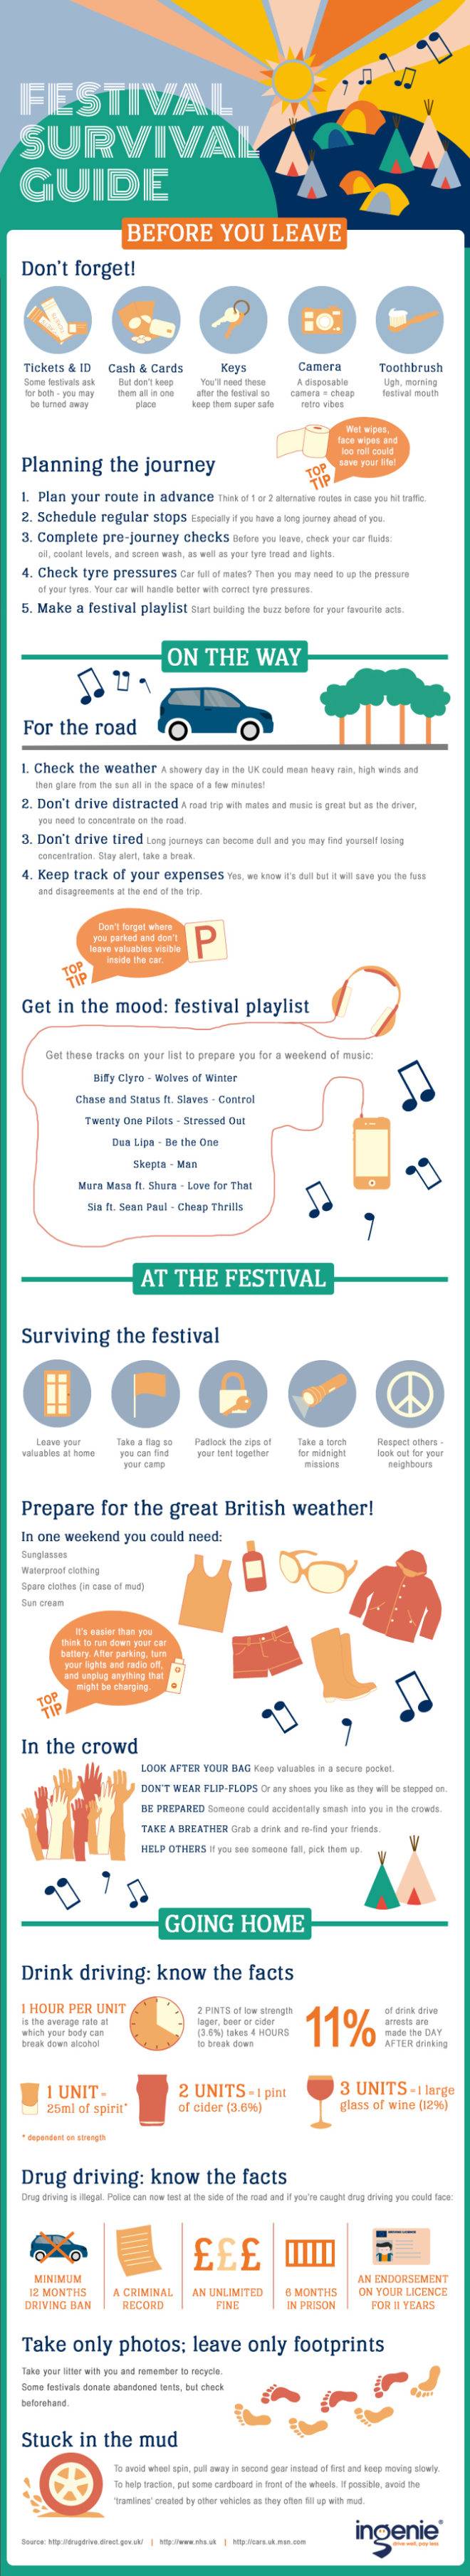 ingenie's Festival Guide